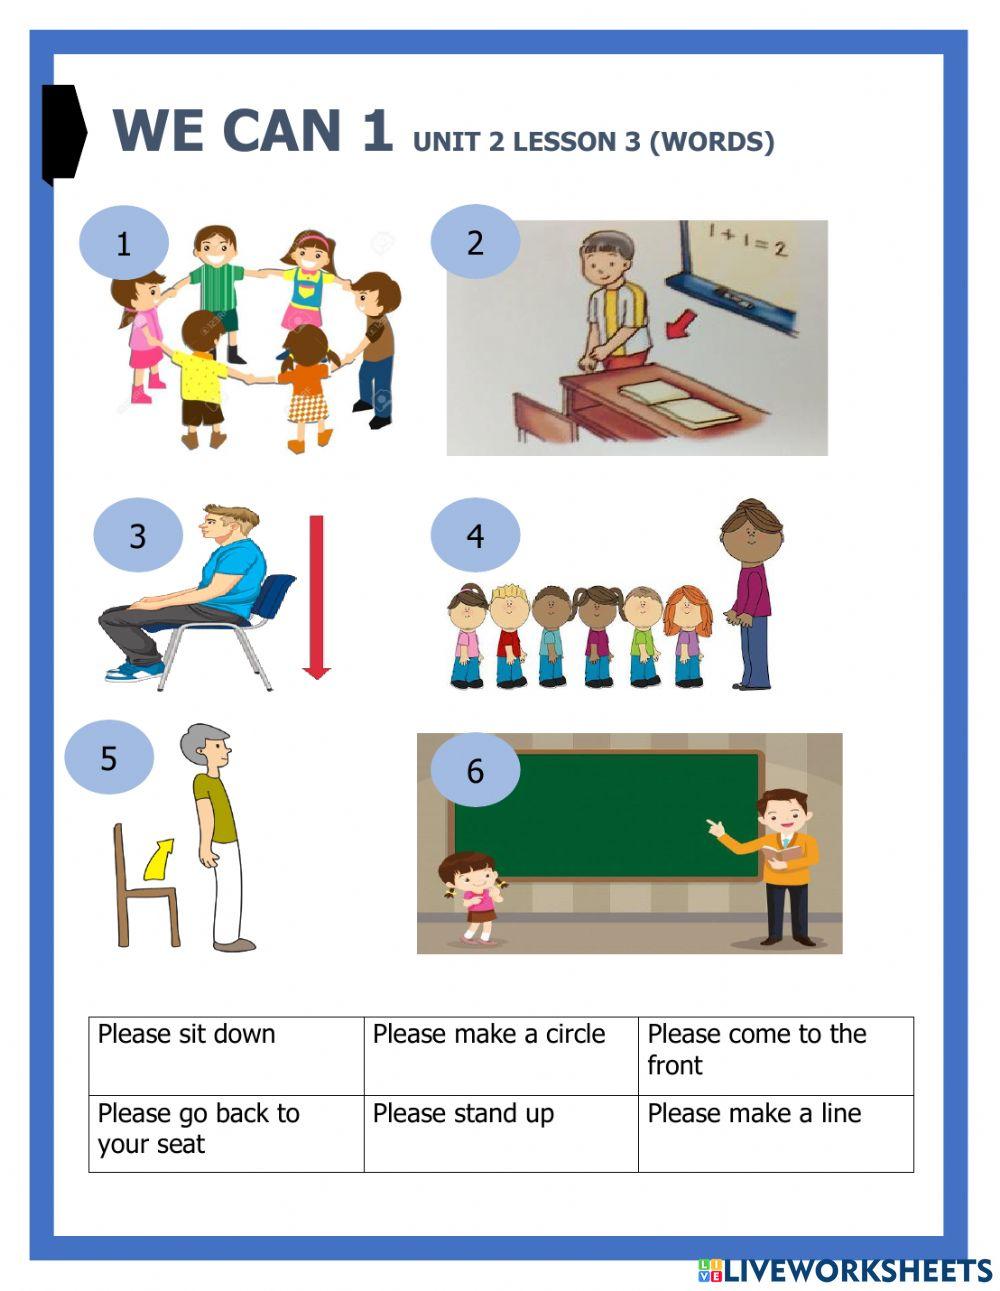 We can 1 unit 2 lesson 3 words worksheet | Live Worksheets